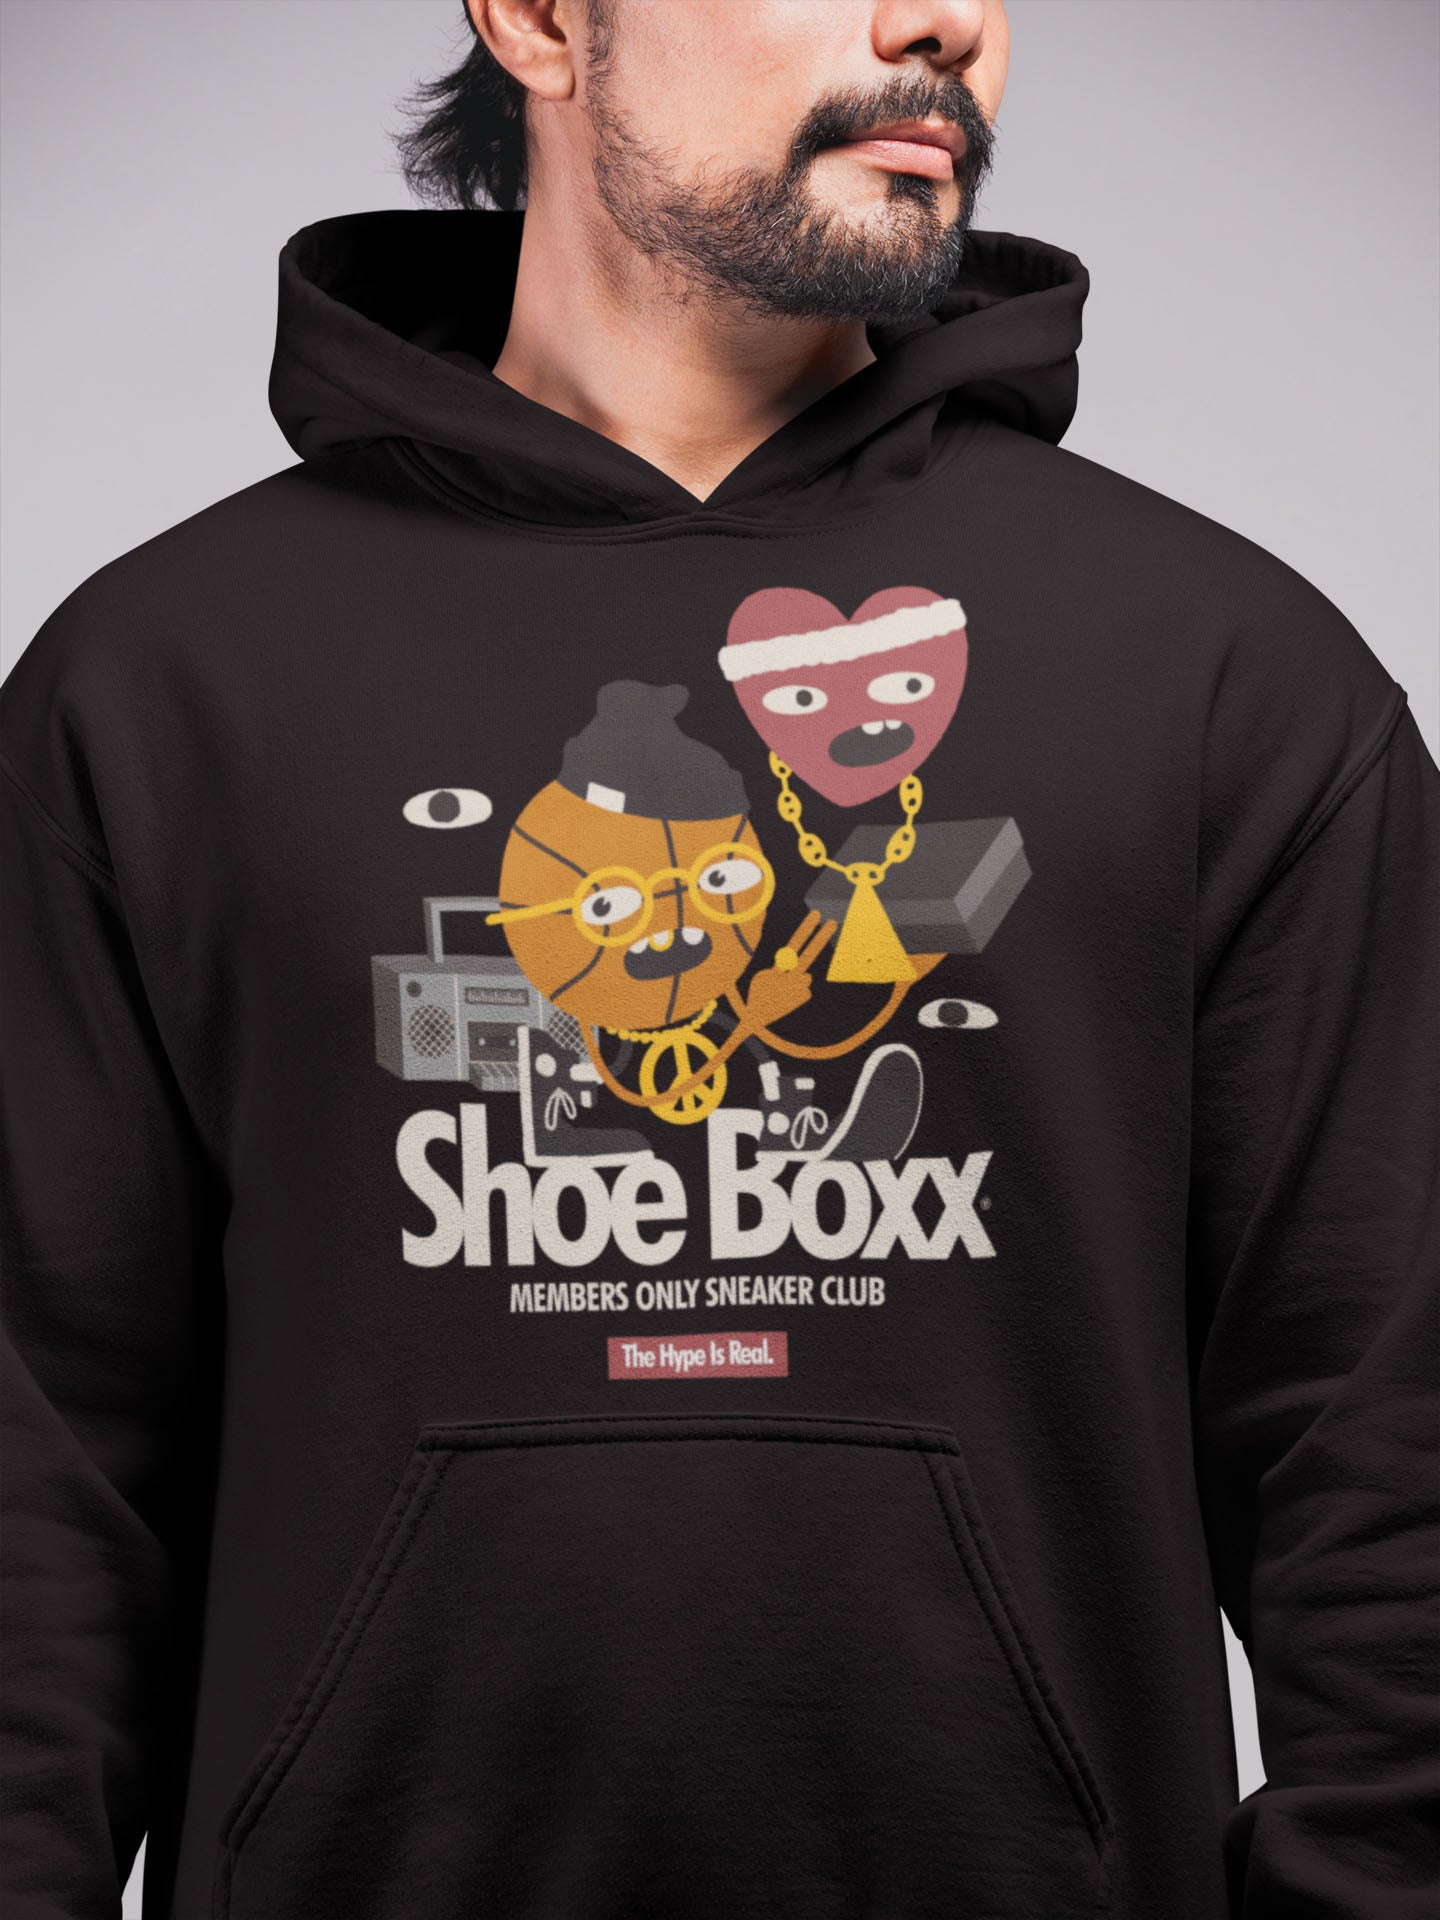 ShoeBoxx Character Tee Unisex Hoodies